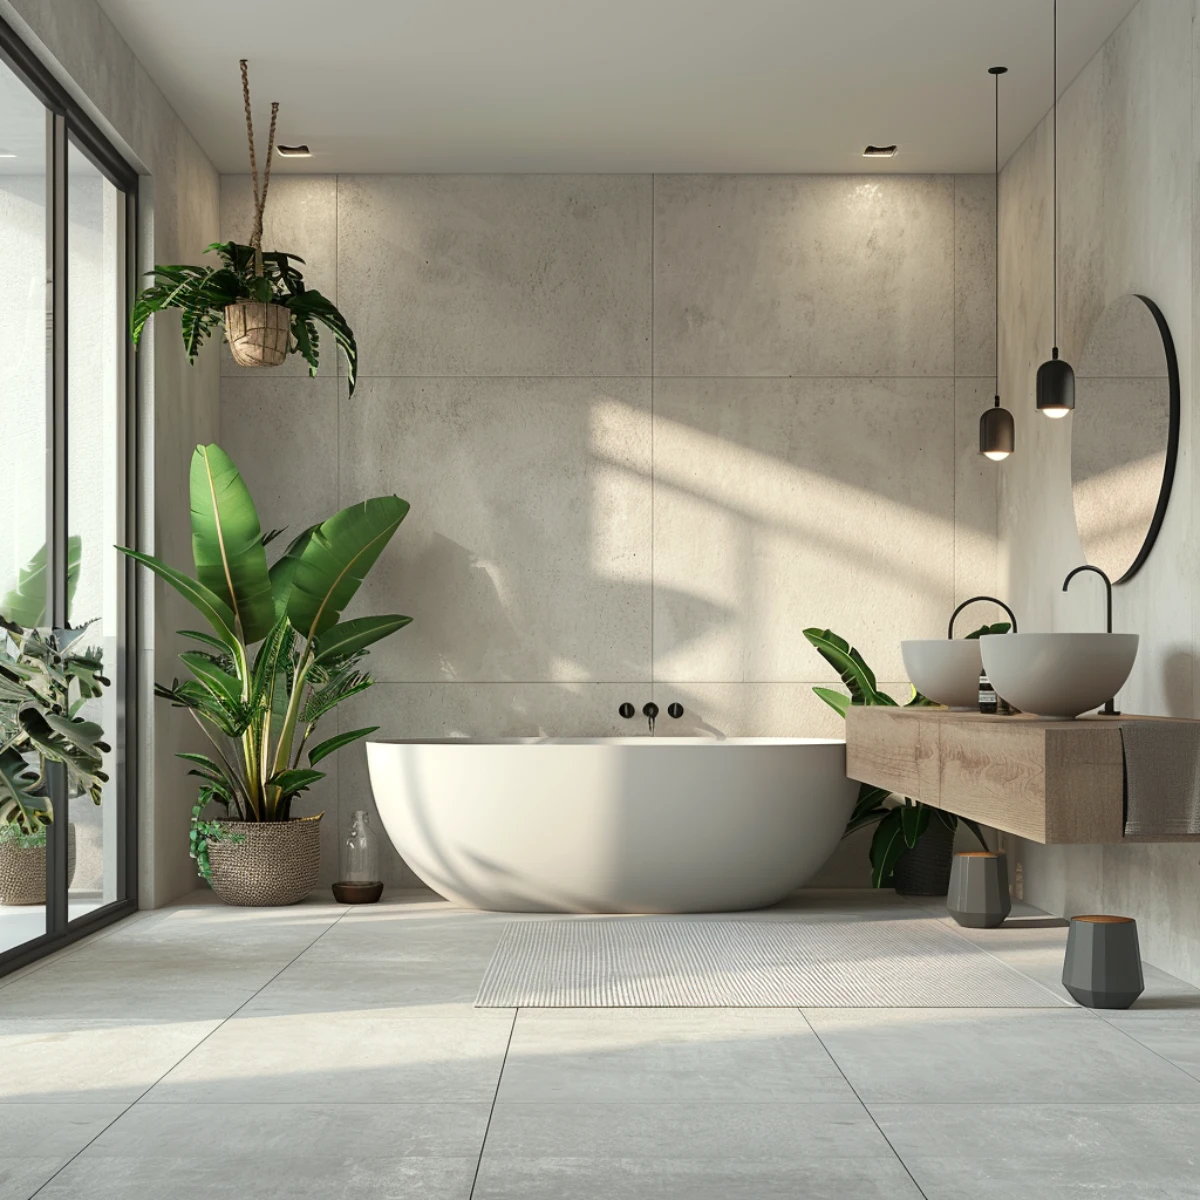 meubles blancs et design pour une salle de bain minimalise plantes vertes